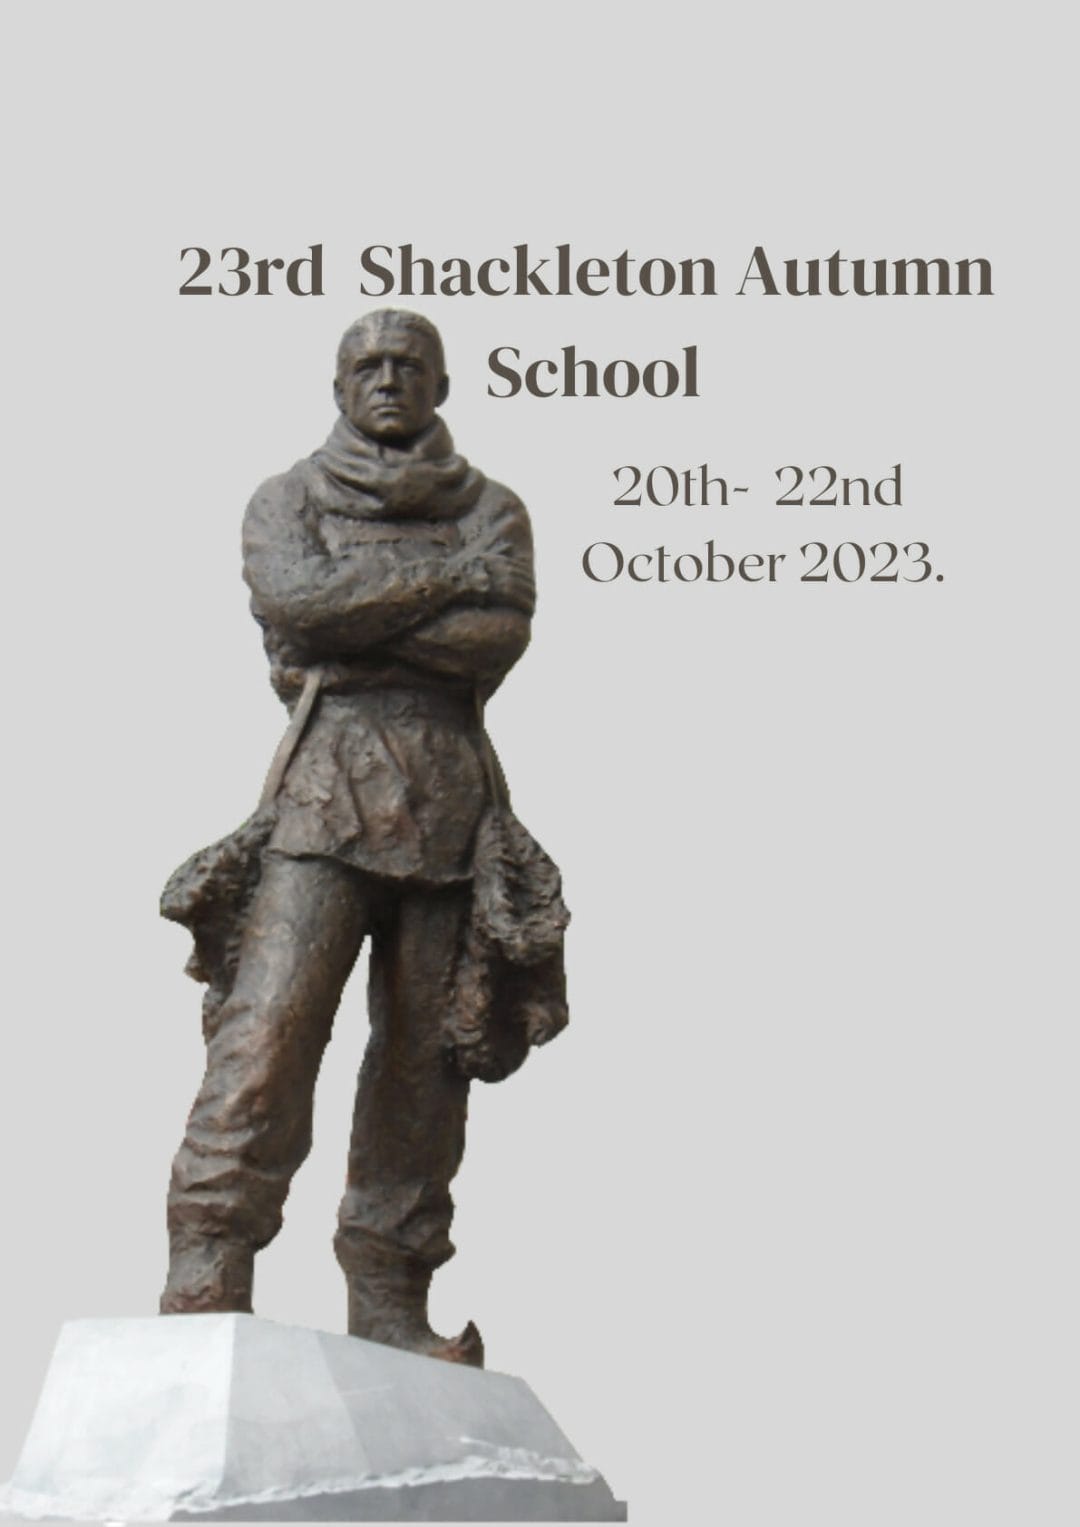 http://shackletonmuseum.com/ernest-shackleton/autumn-school/23rd-annual-shackleton-autumn-school/